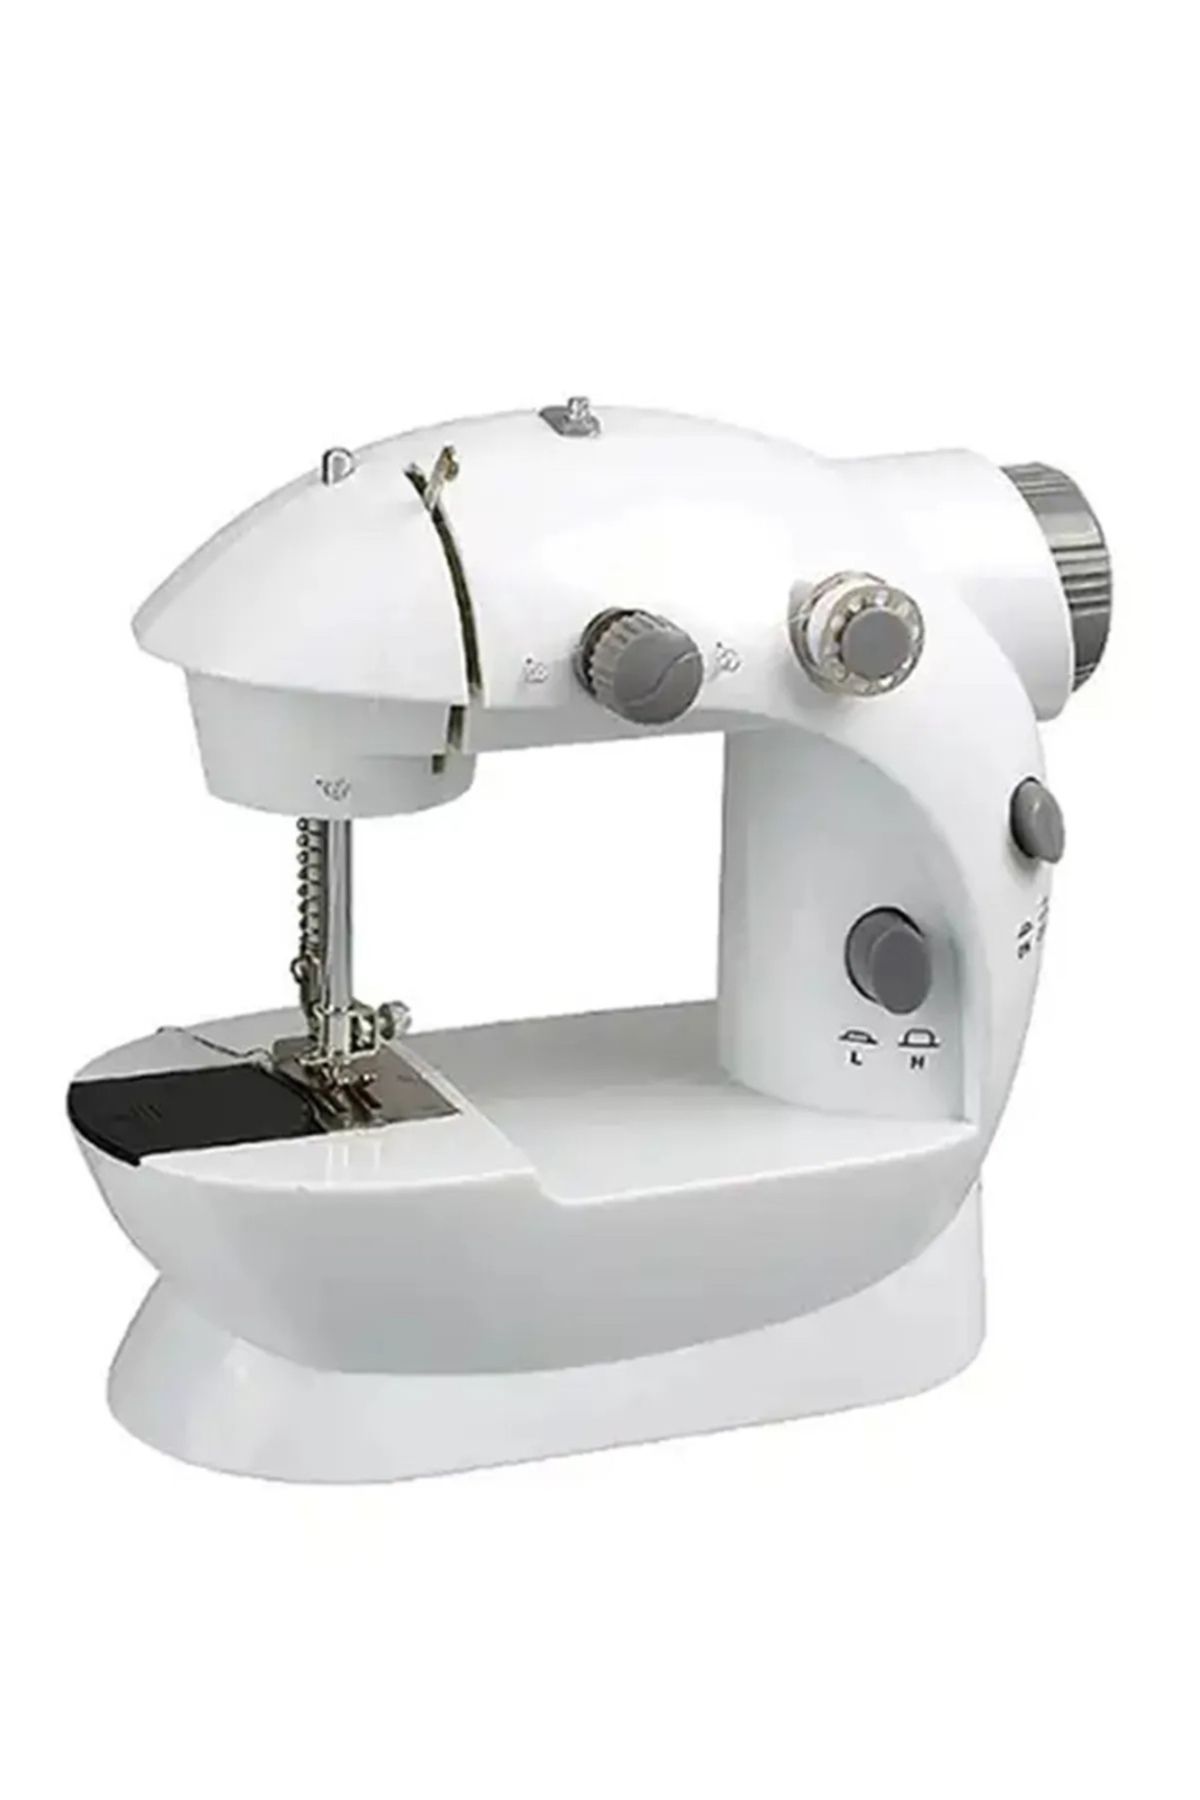 KATEN Mini Ev Dikiş Makinesi Pedallı Sewıng Machine